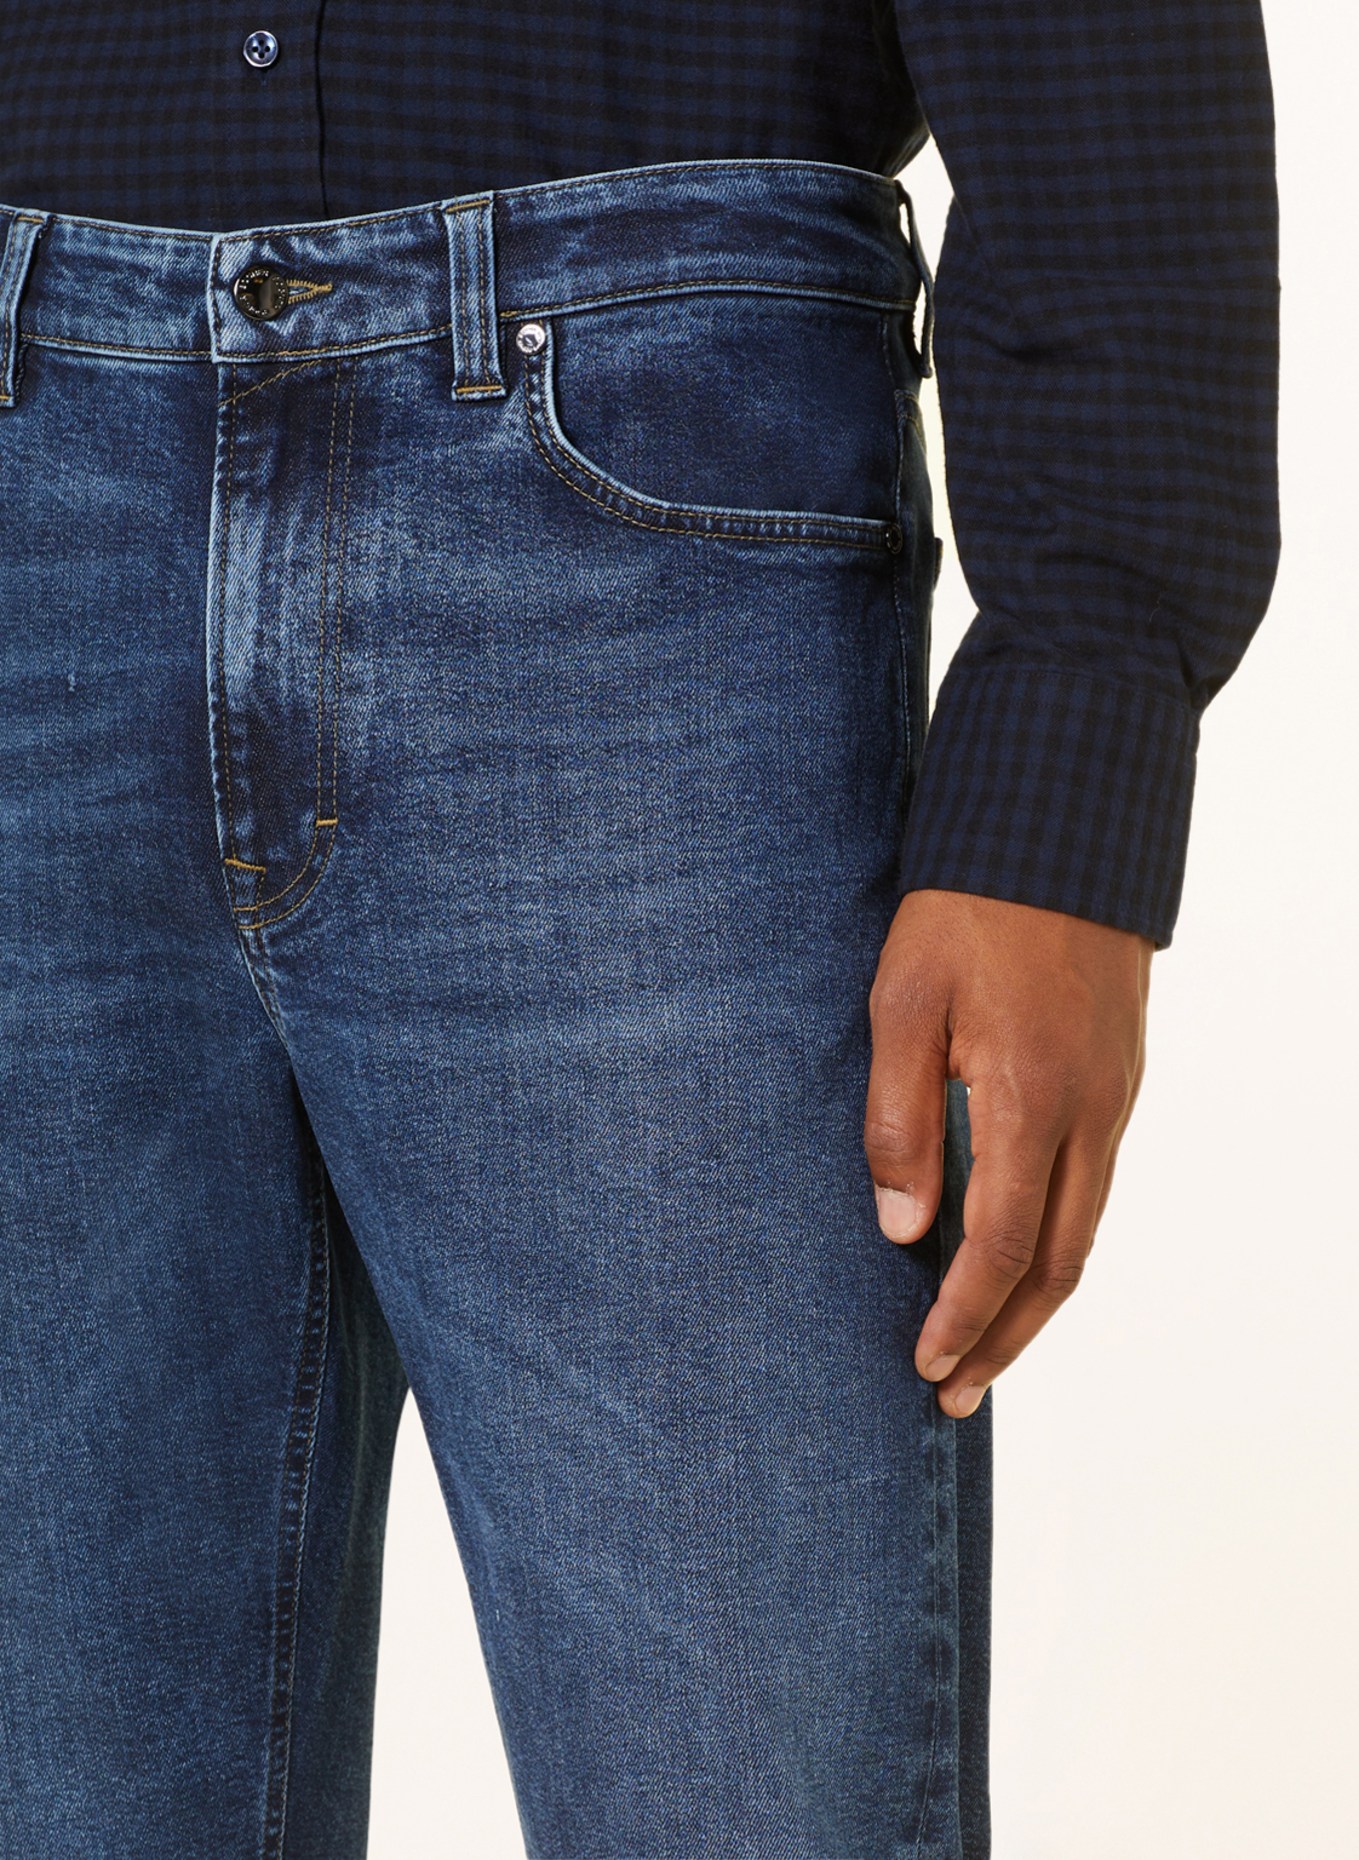 BOGNER Jeans BRIAN tapered fit, Color: 428 428 (Image 5)